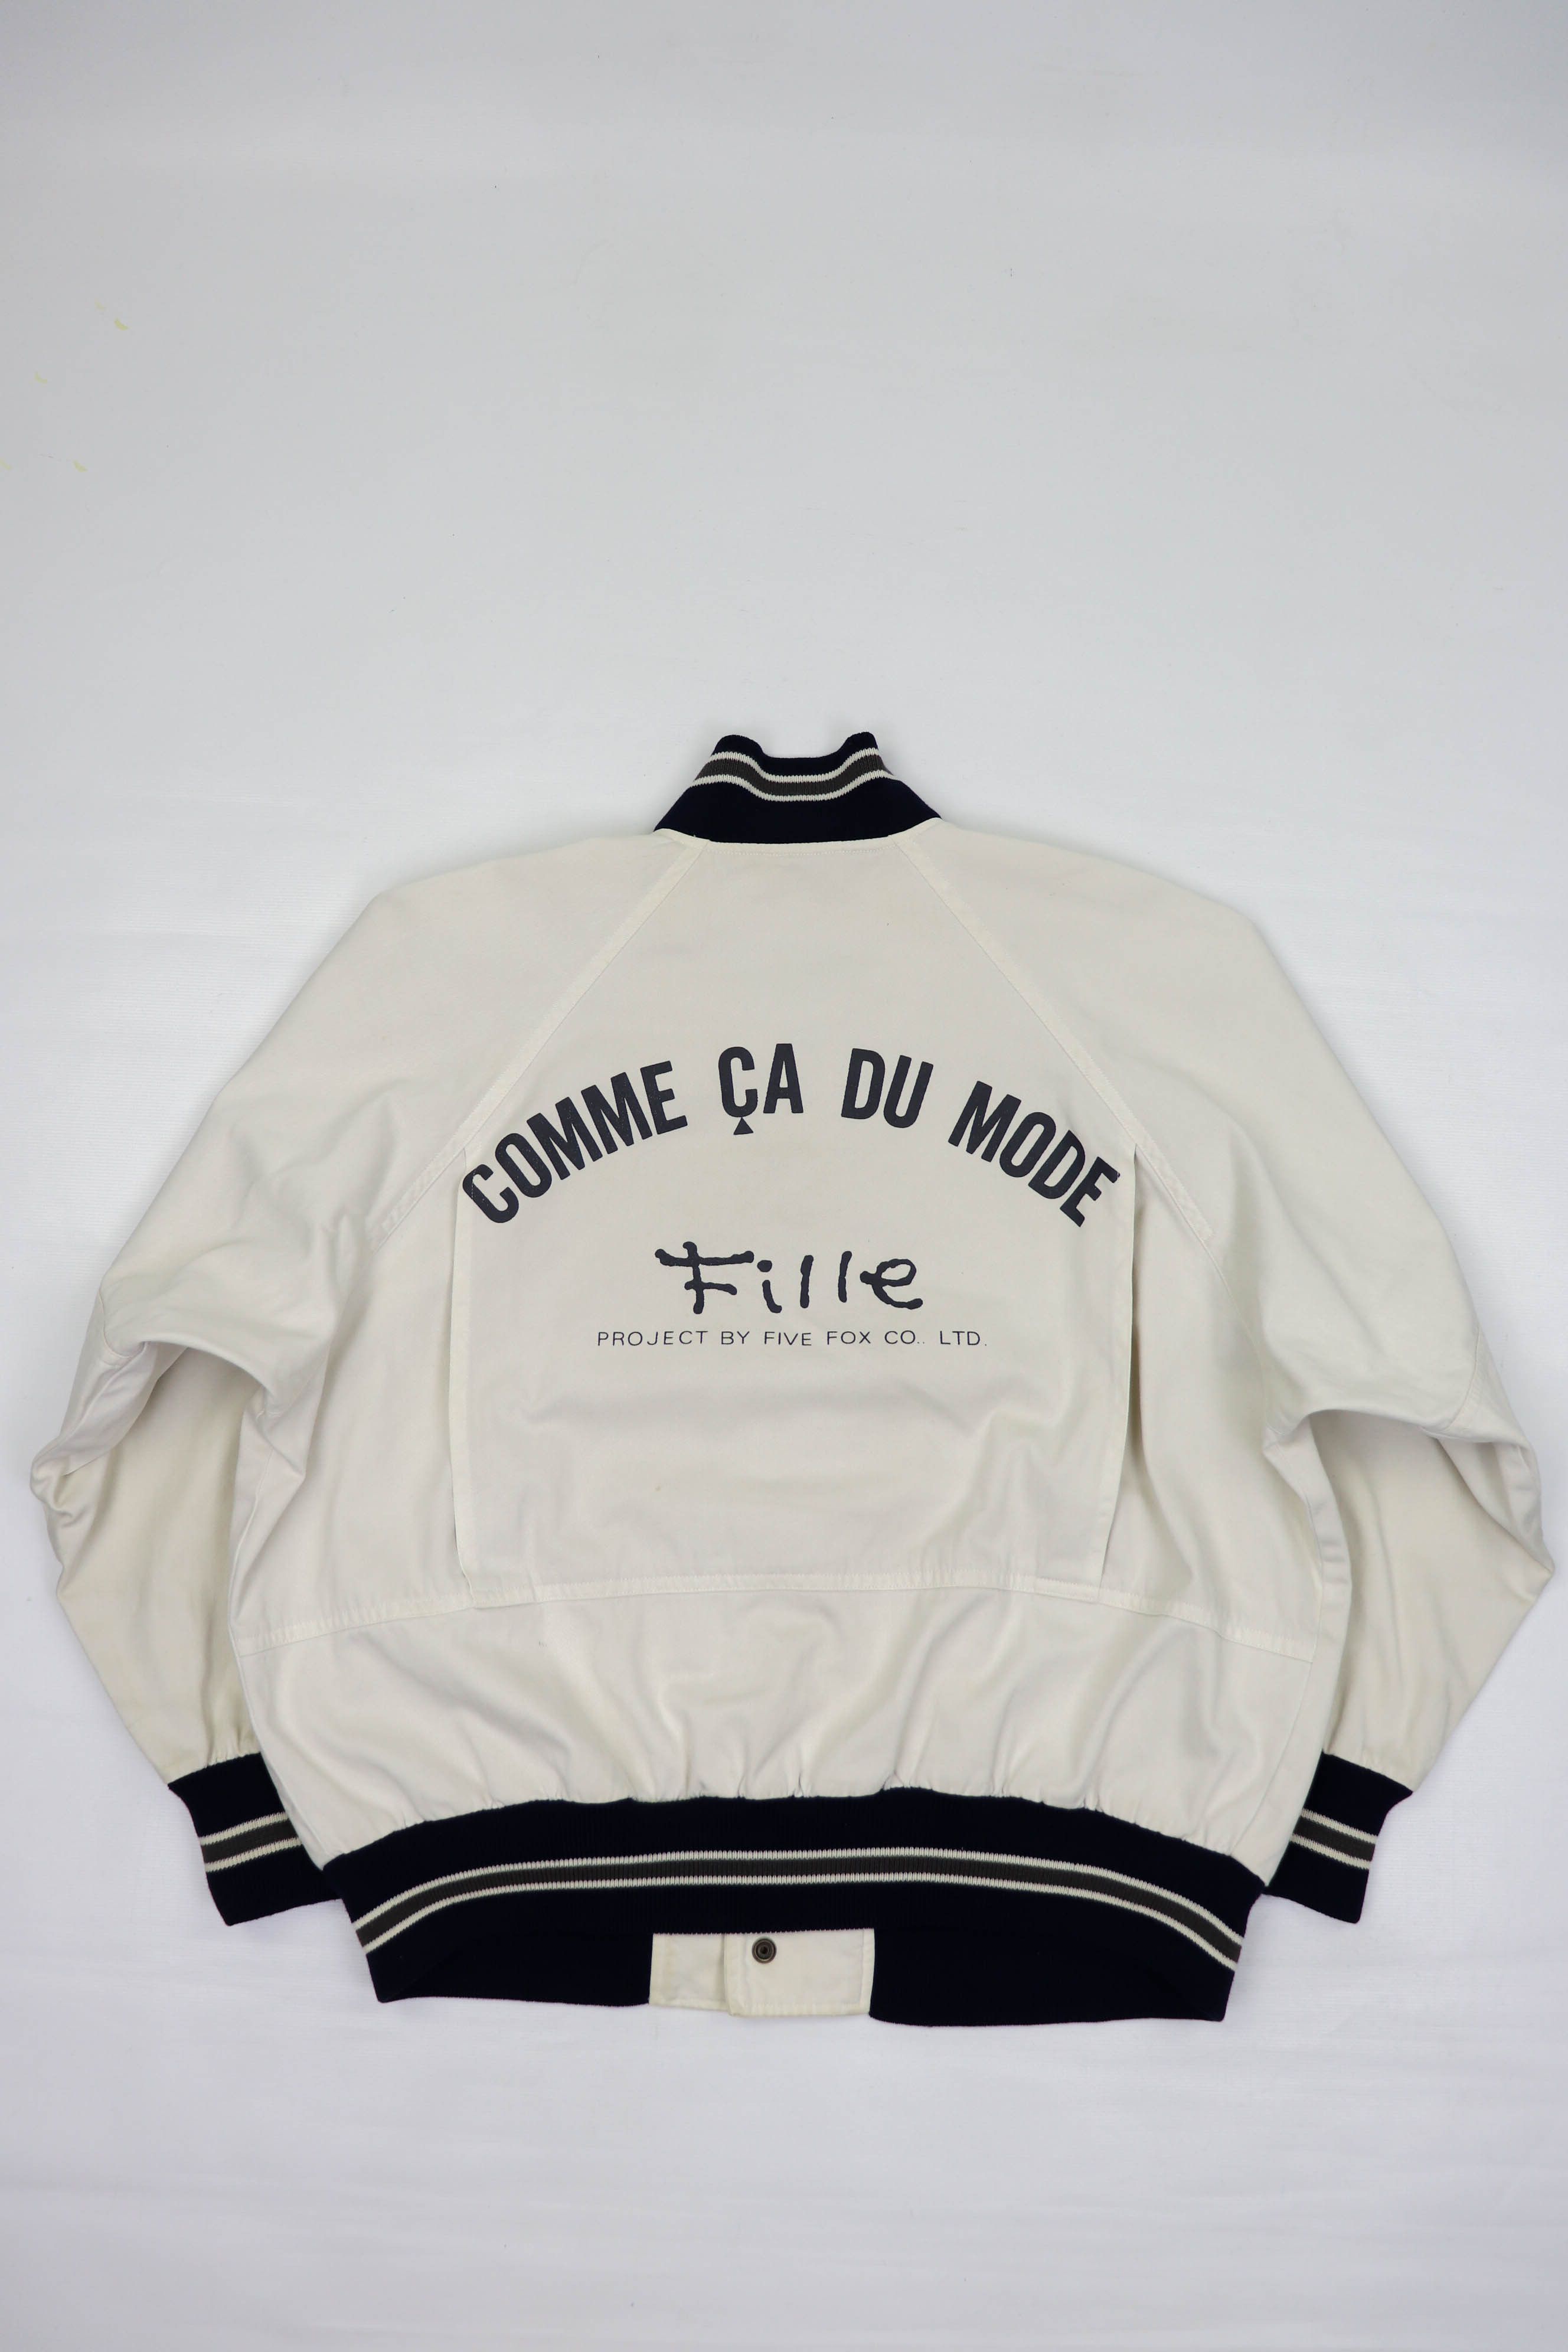 Vintage Comme Ca Du Mode Japan Fille Vintage White Bomber Jacket